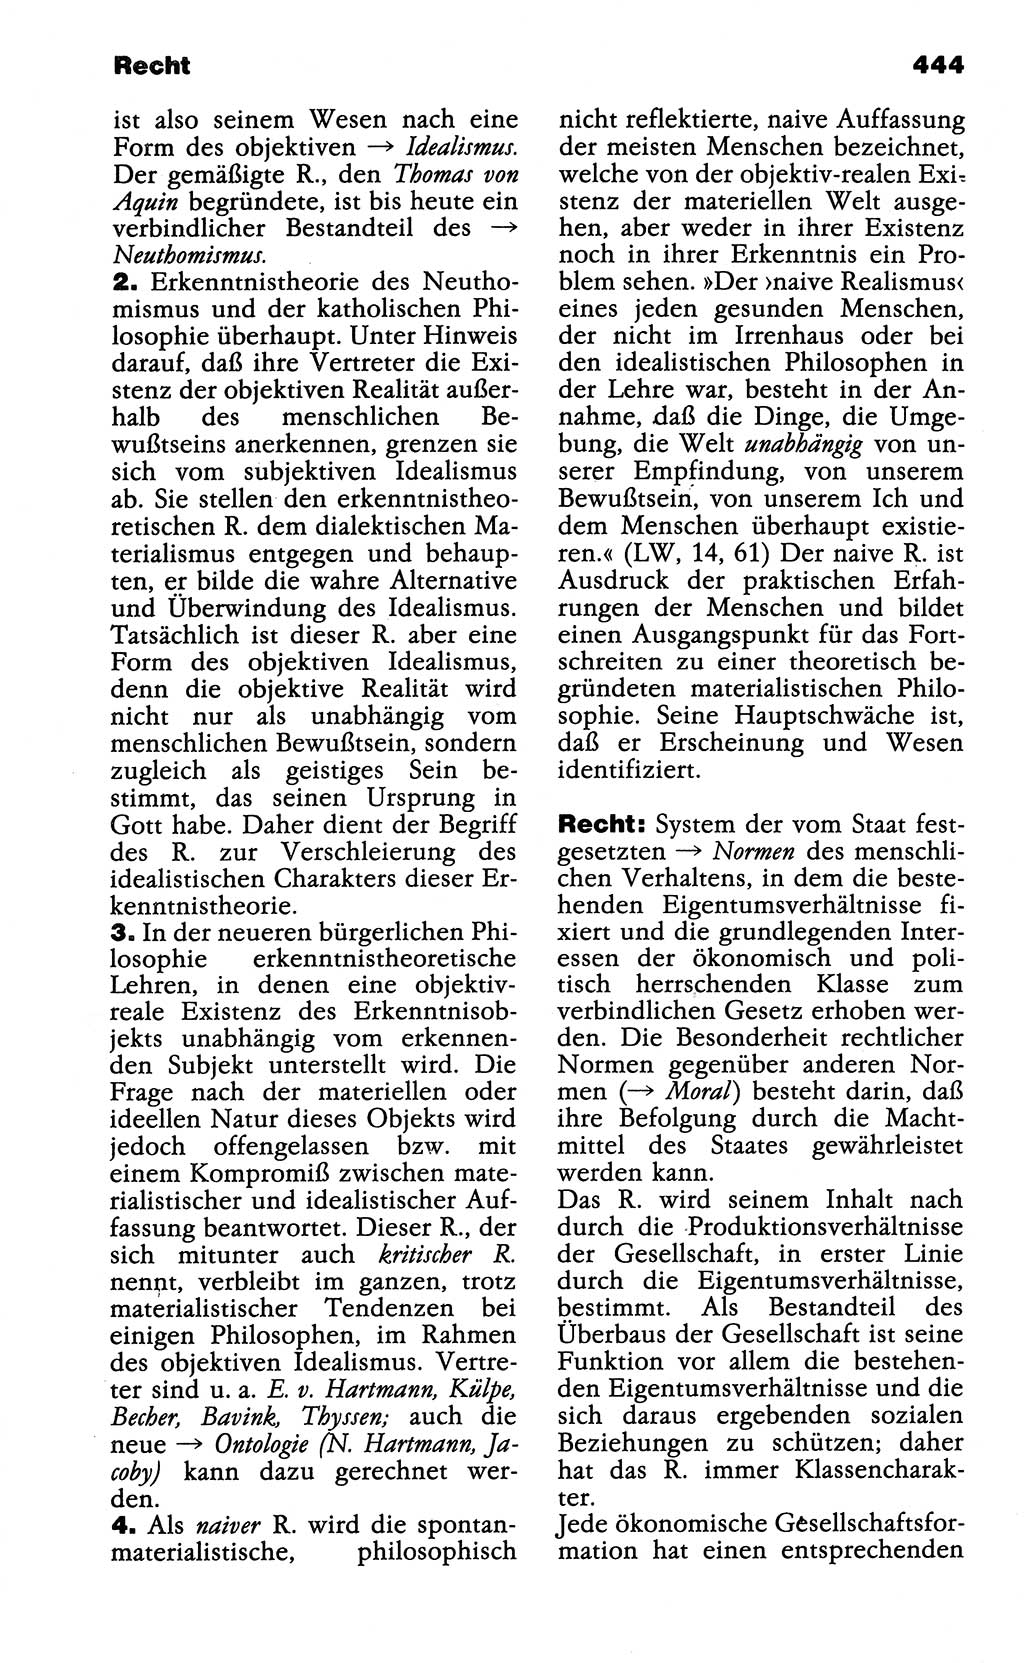 Wörterbuch der marxistisch-leninistischen Philosophie [Deutsche Demokratische Republik (DDR)] 1985, Seite 444 (Wb. ML Phil. DDR 1985, S. 444)